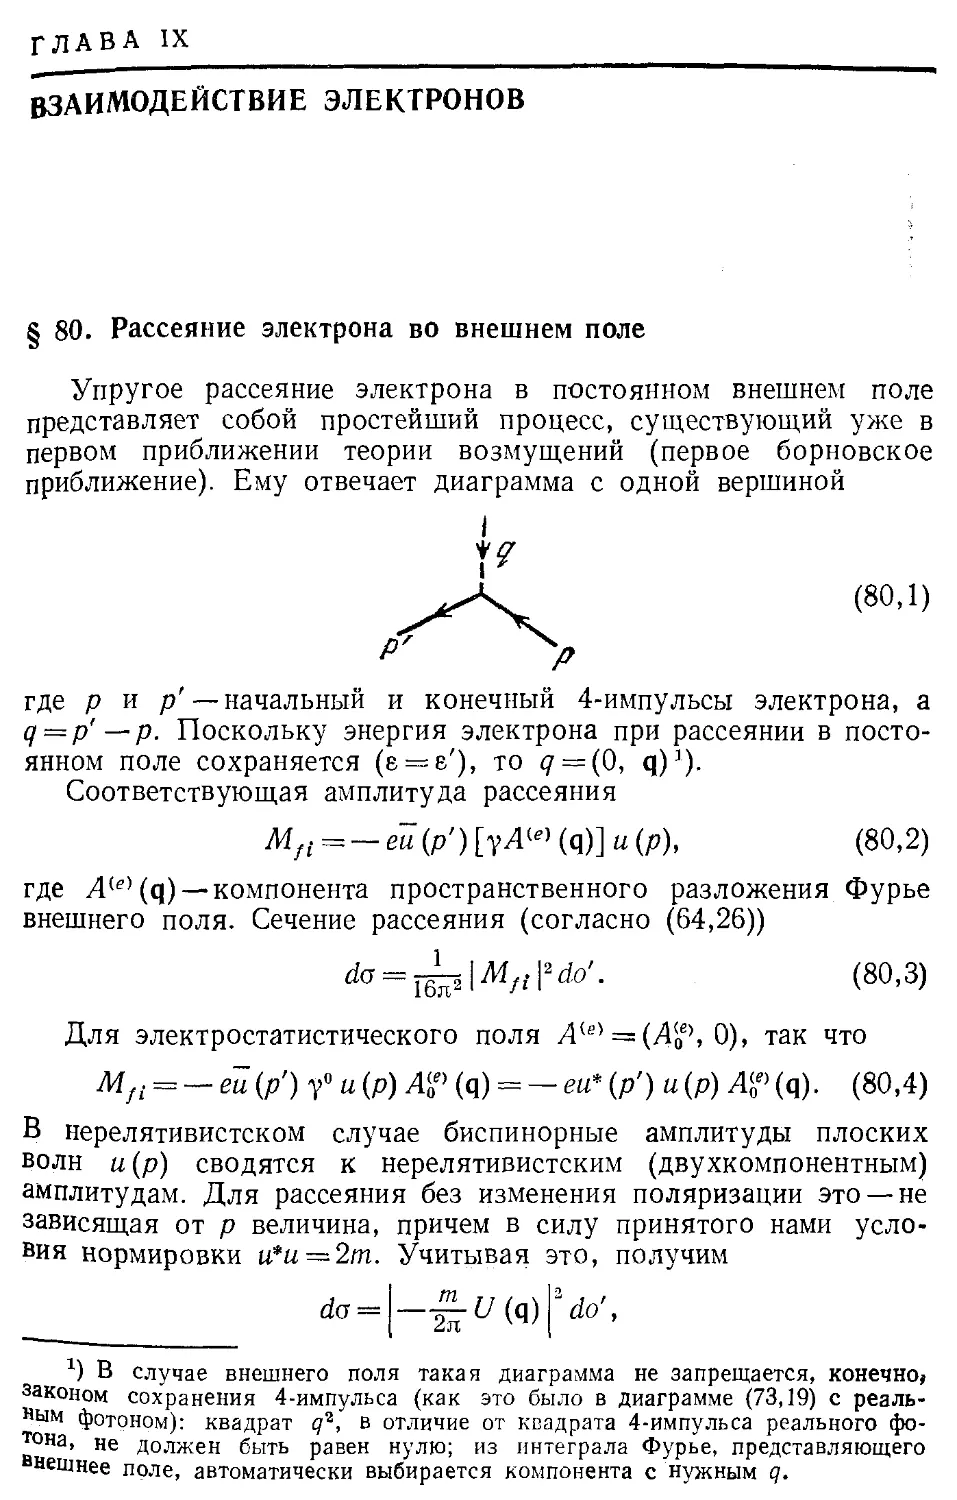 Глава IX. Взаимодействие электронов
§ 80. Рассеяние электрона во внешнем поле